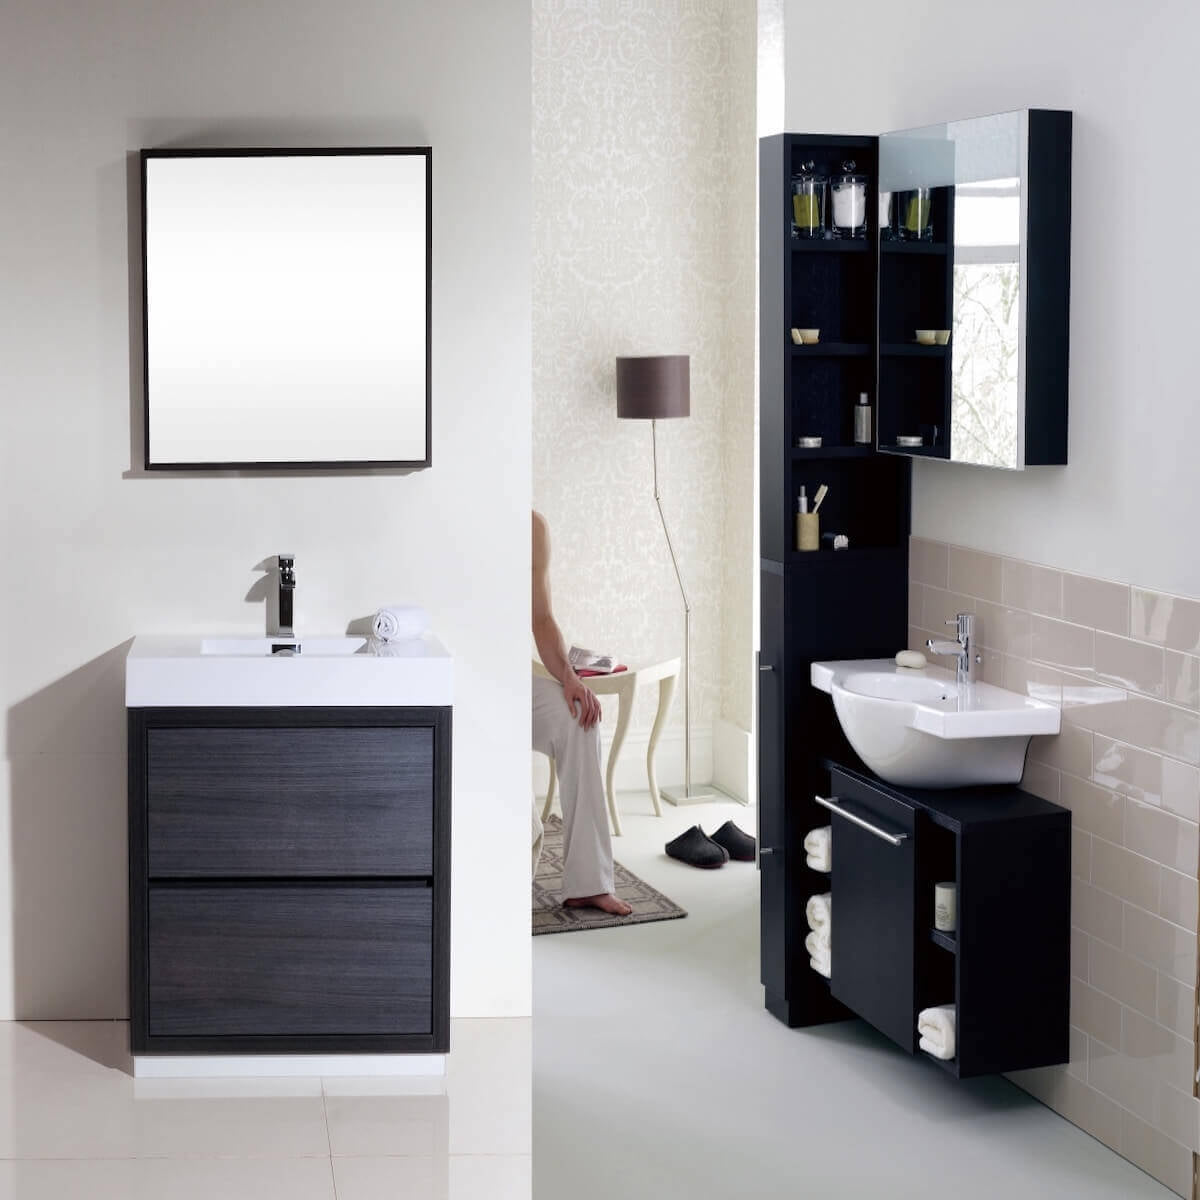 KubeBath Bliss 36" Gray Oak Freestanding Single Vanity FMB36-GO in Bathroom #finish_gray oak